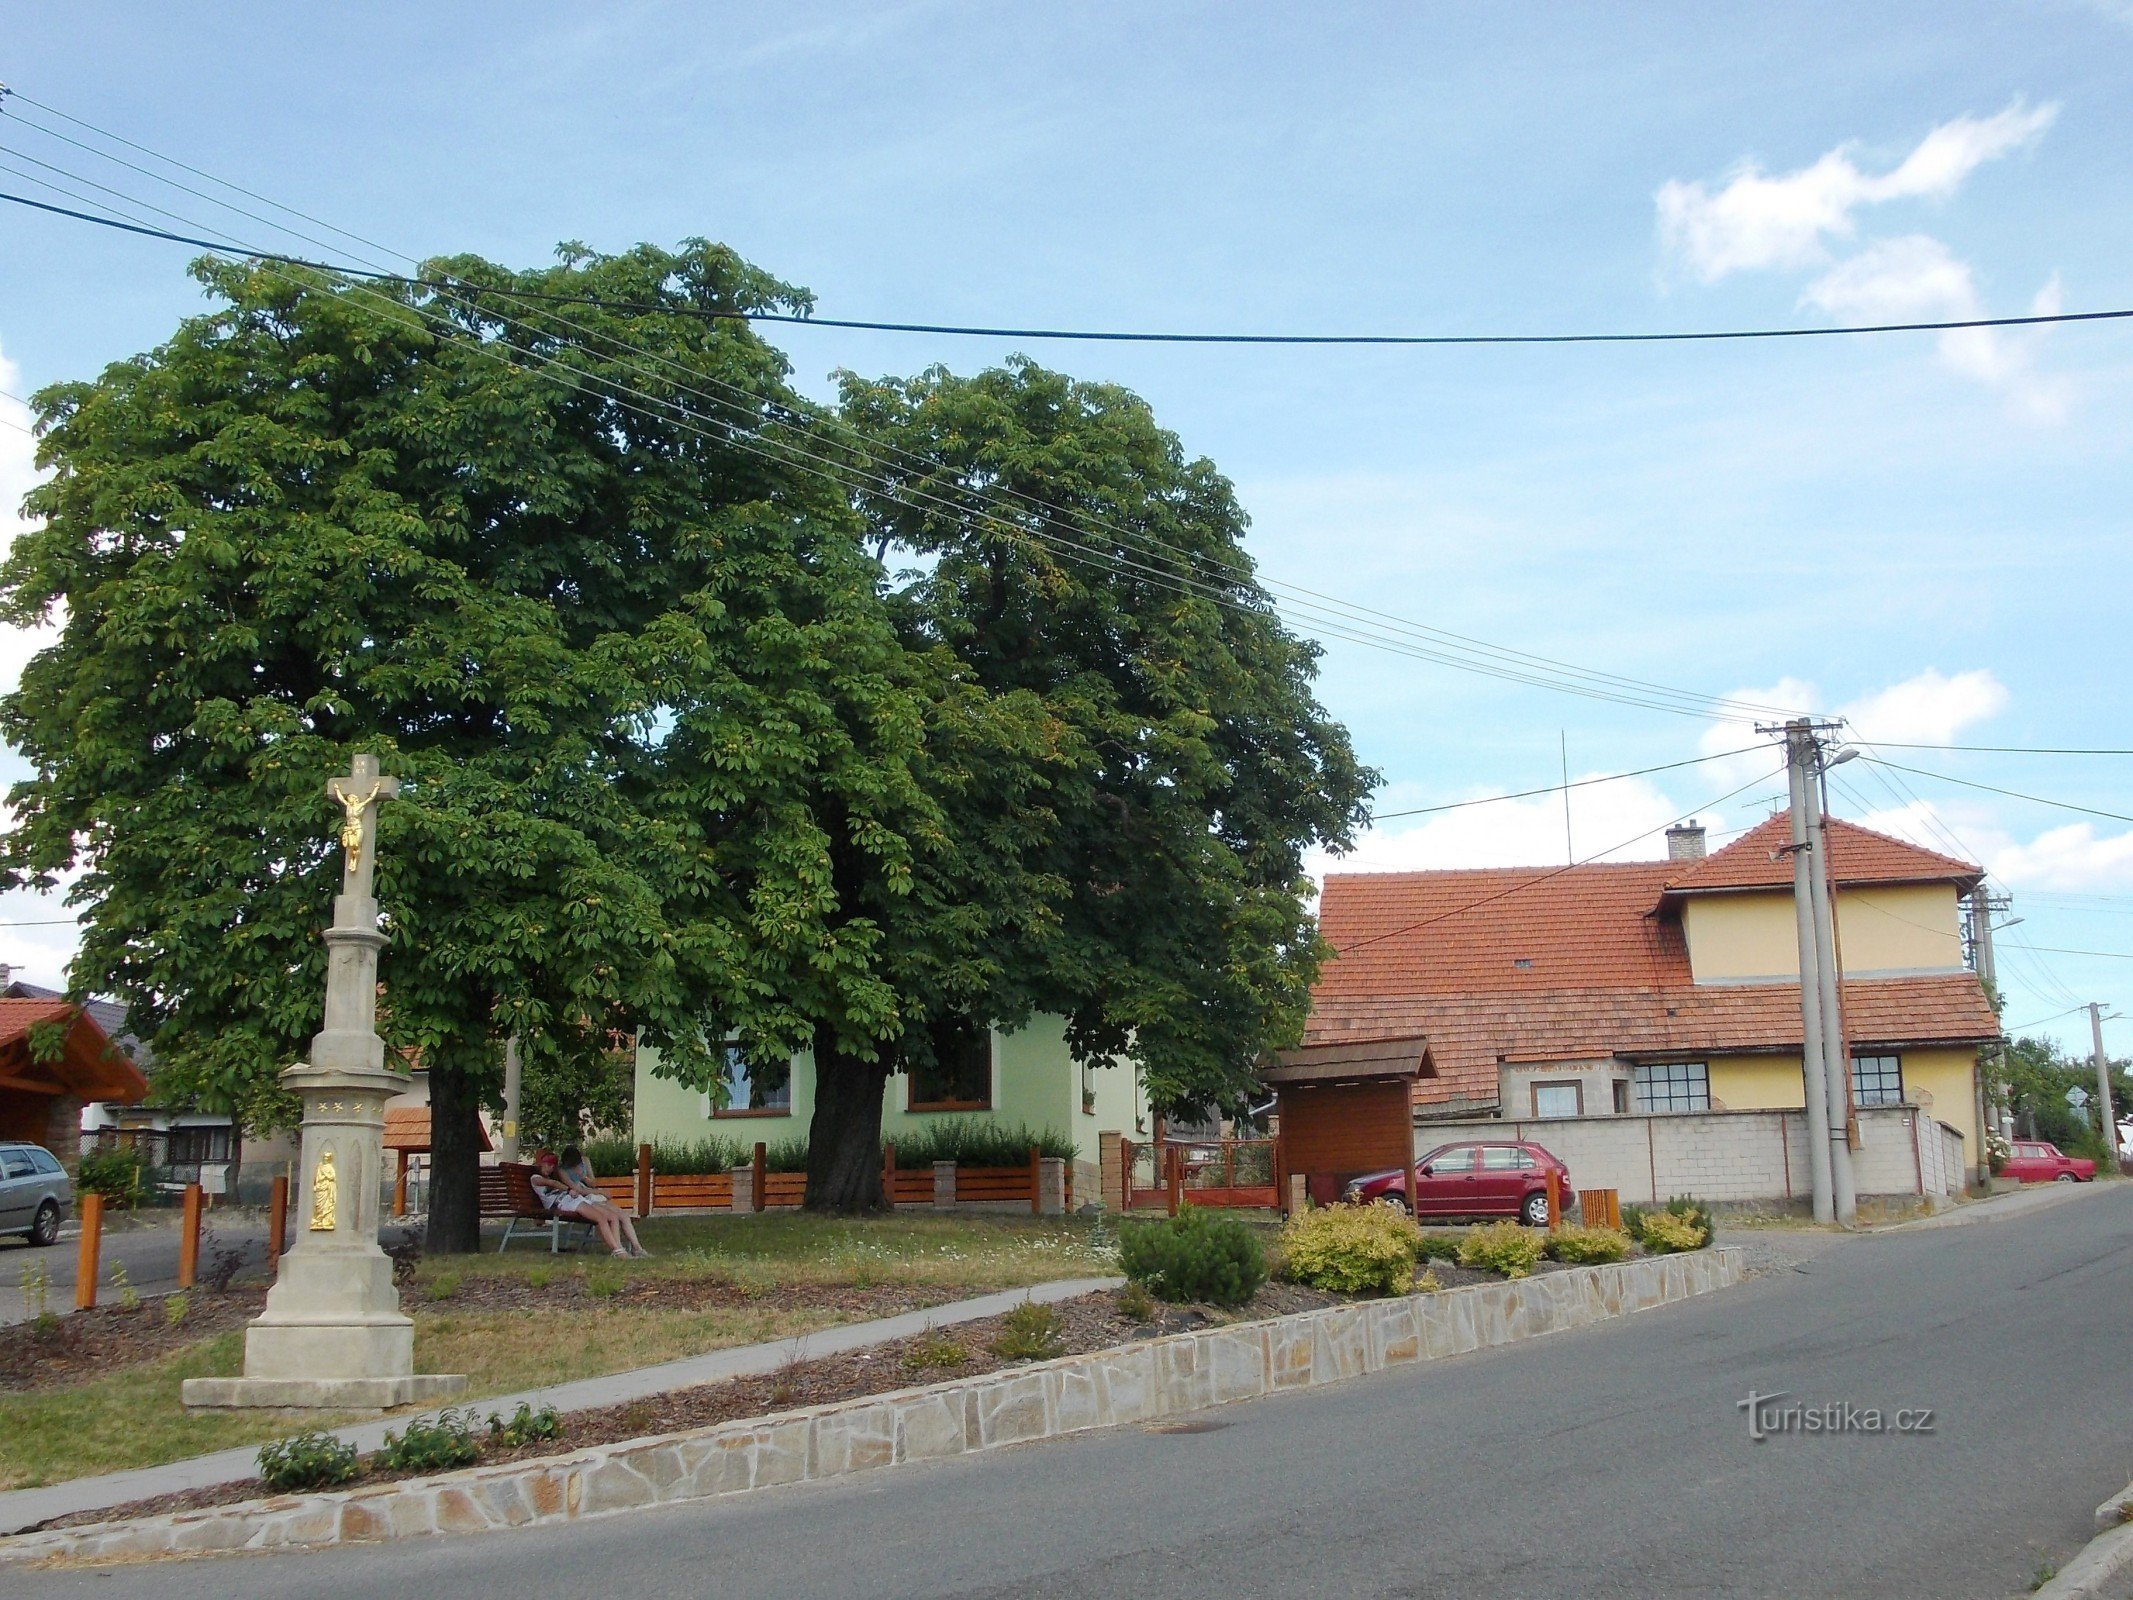 vista do centro da vila